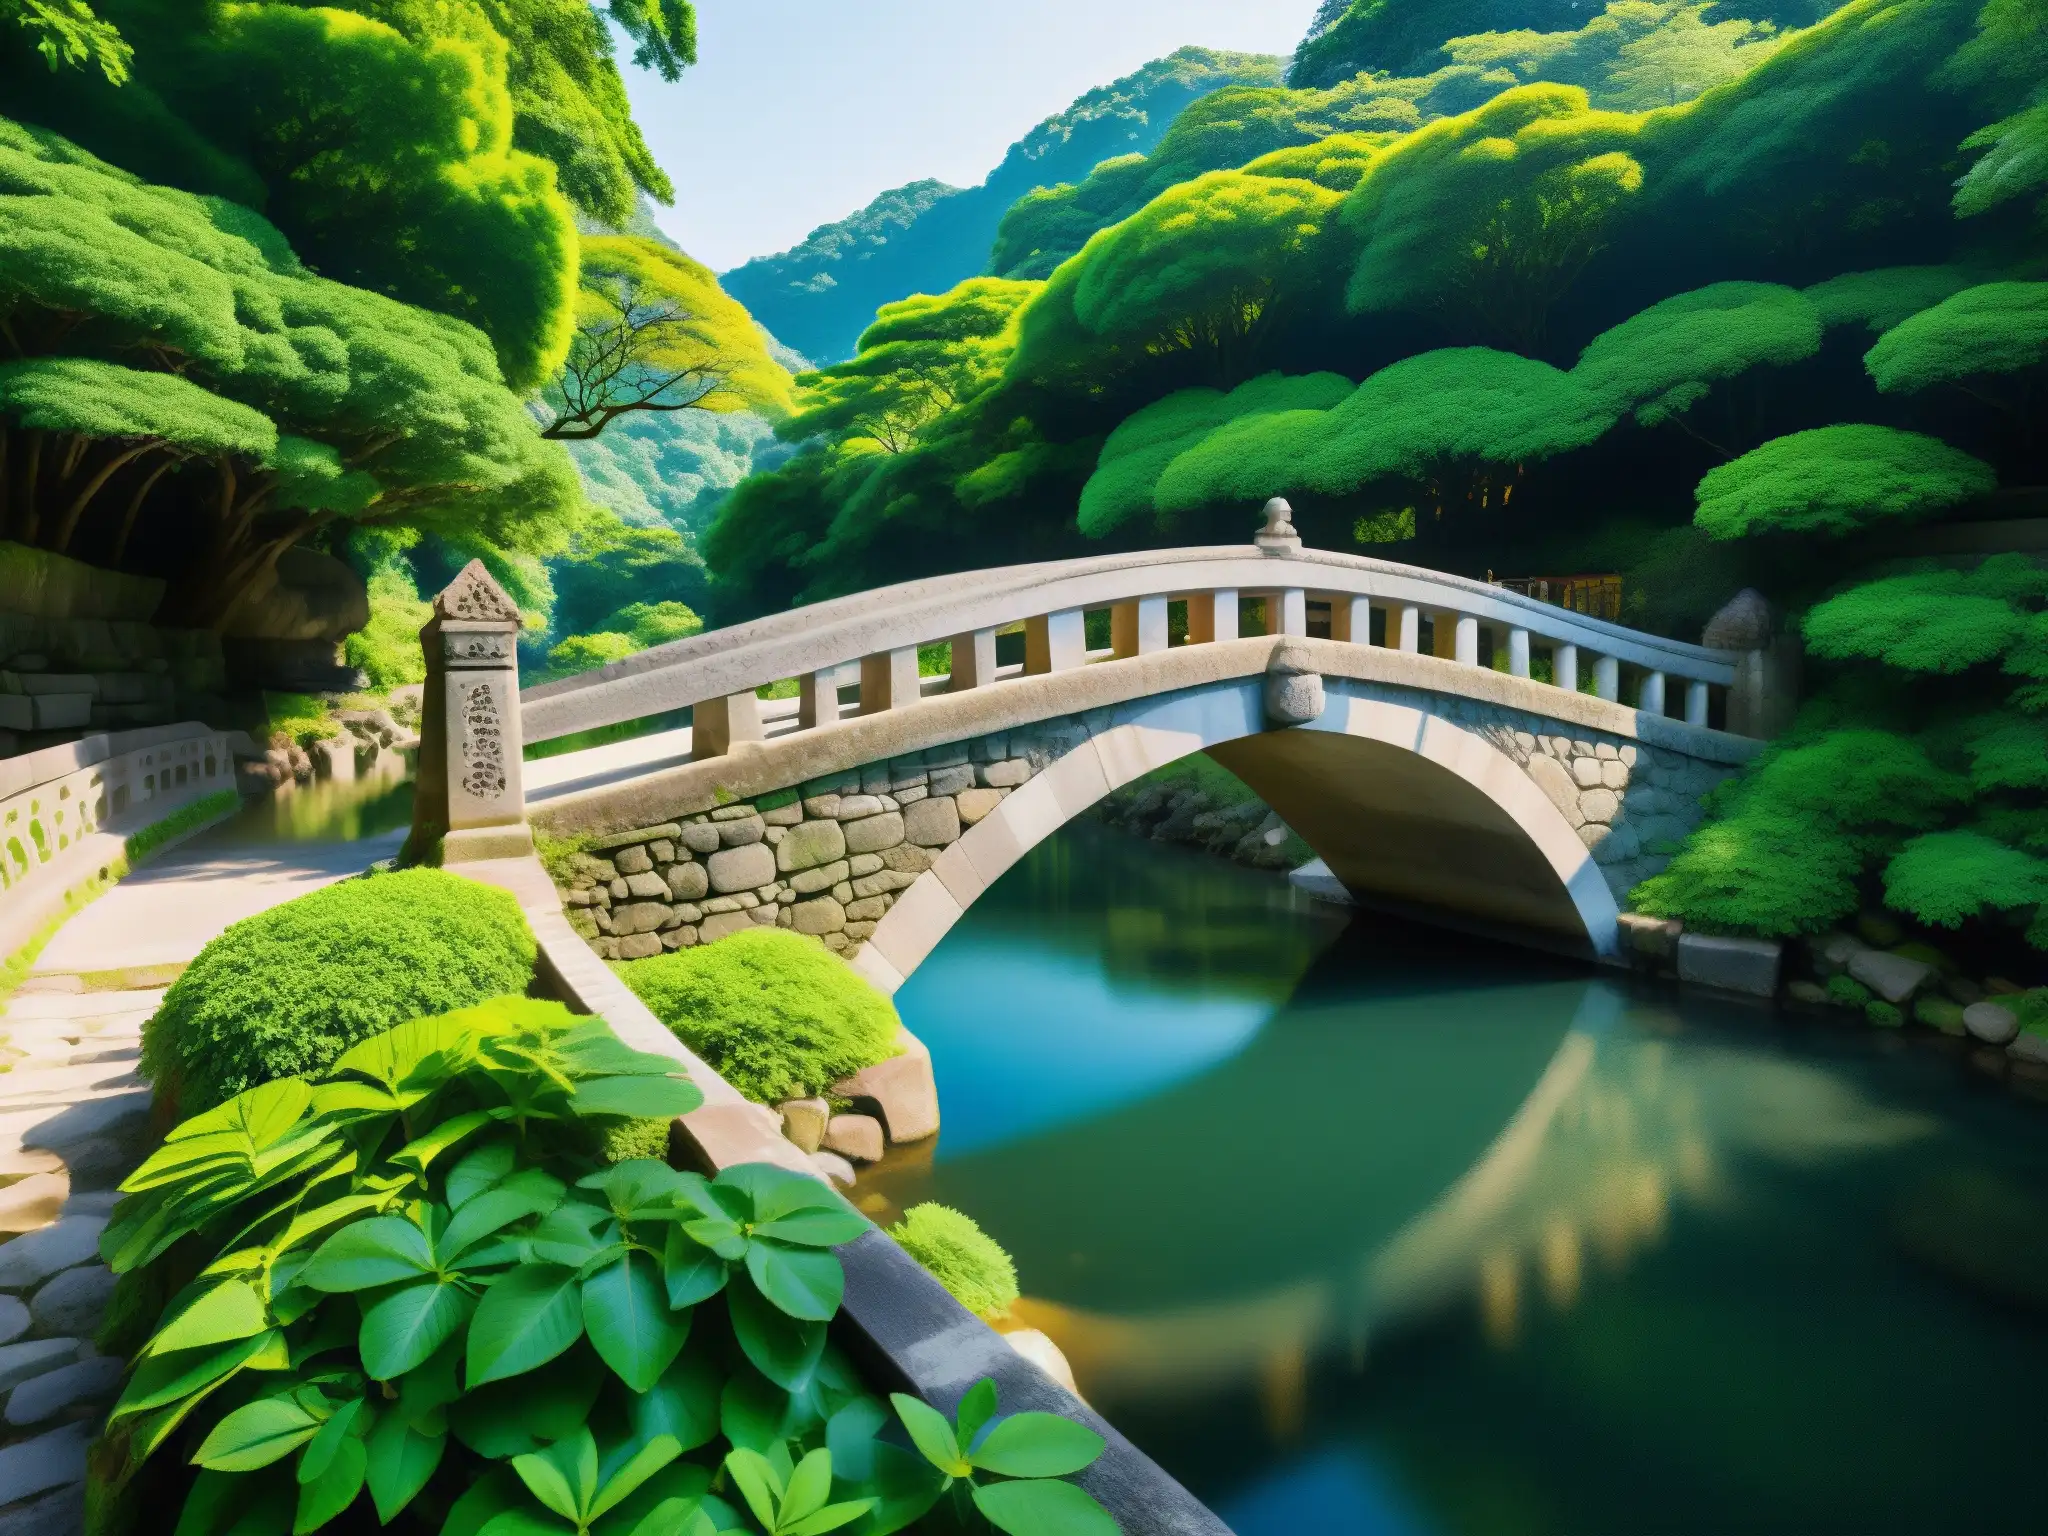 La legendaria Saruhashi: puente de piedra milenario en un entorno natural sereno, reflejando la cultura actual de la región